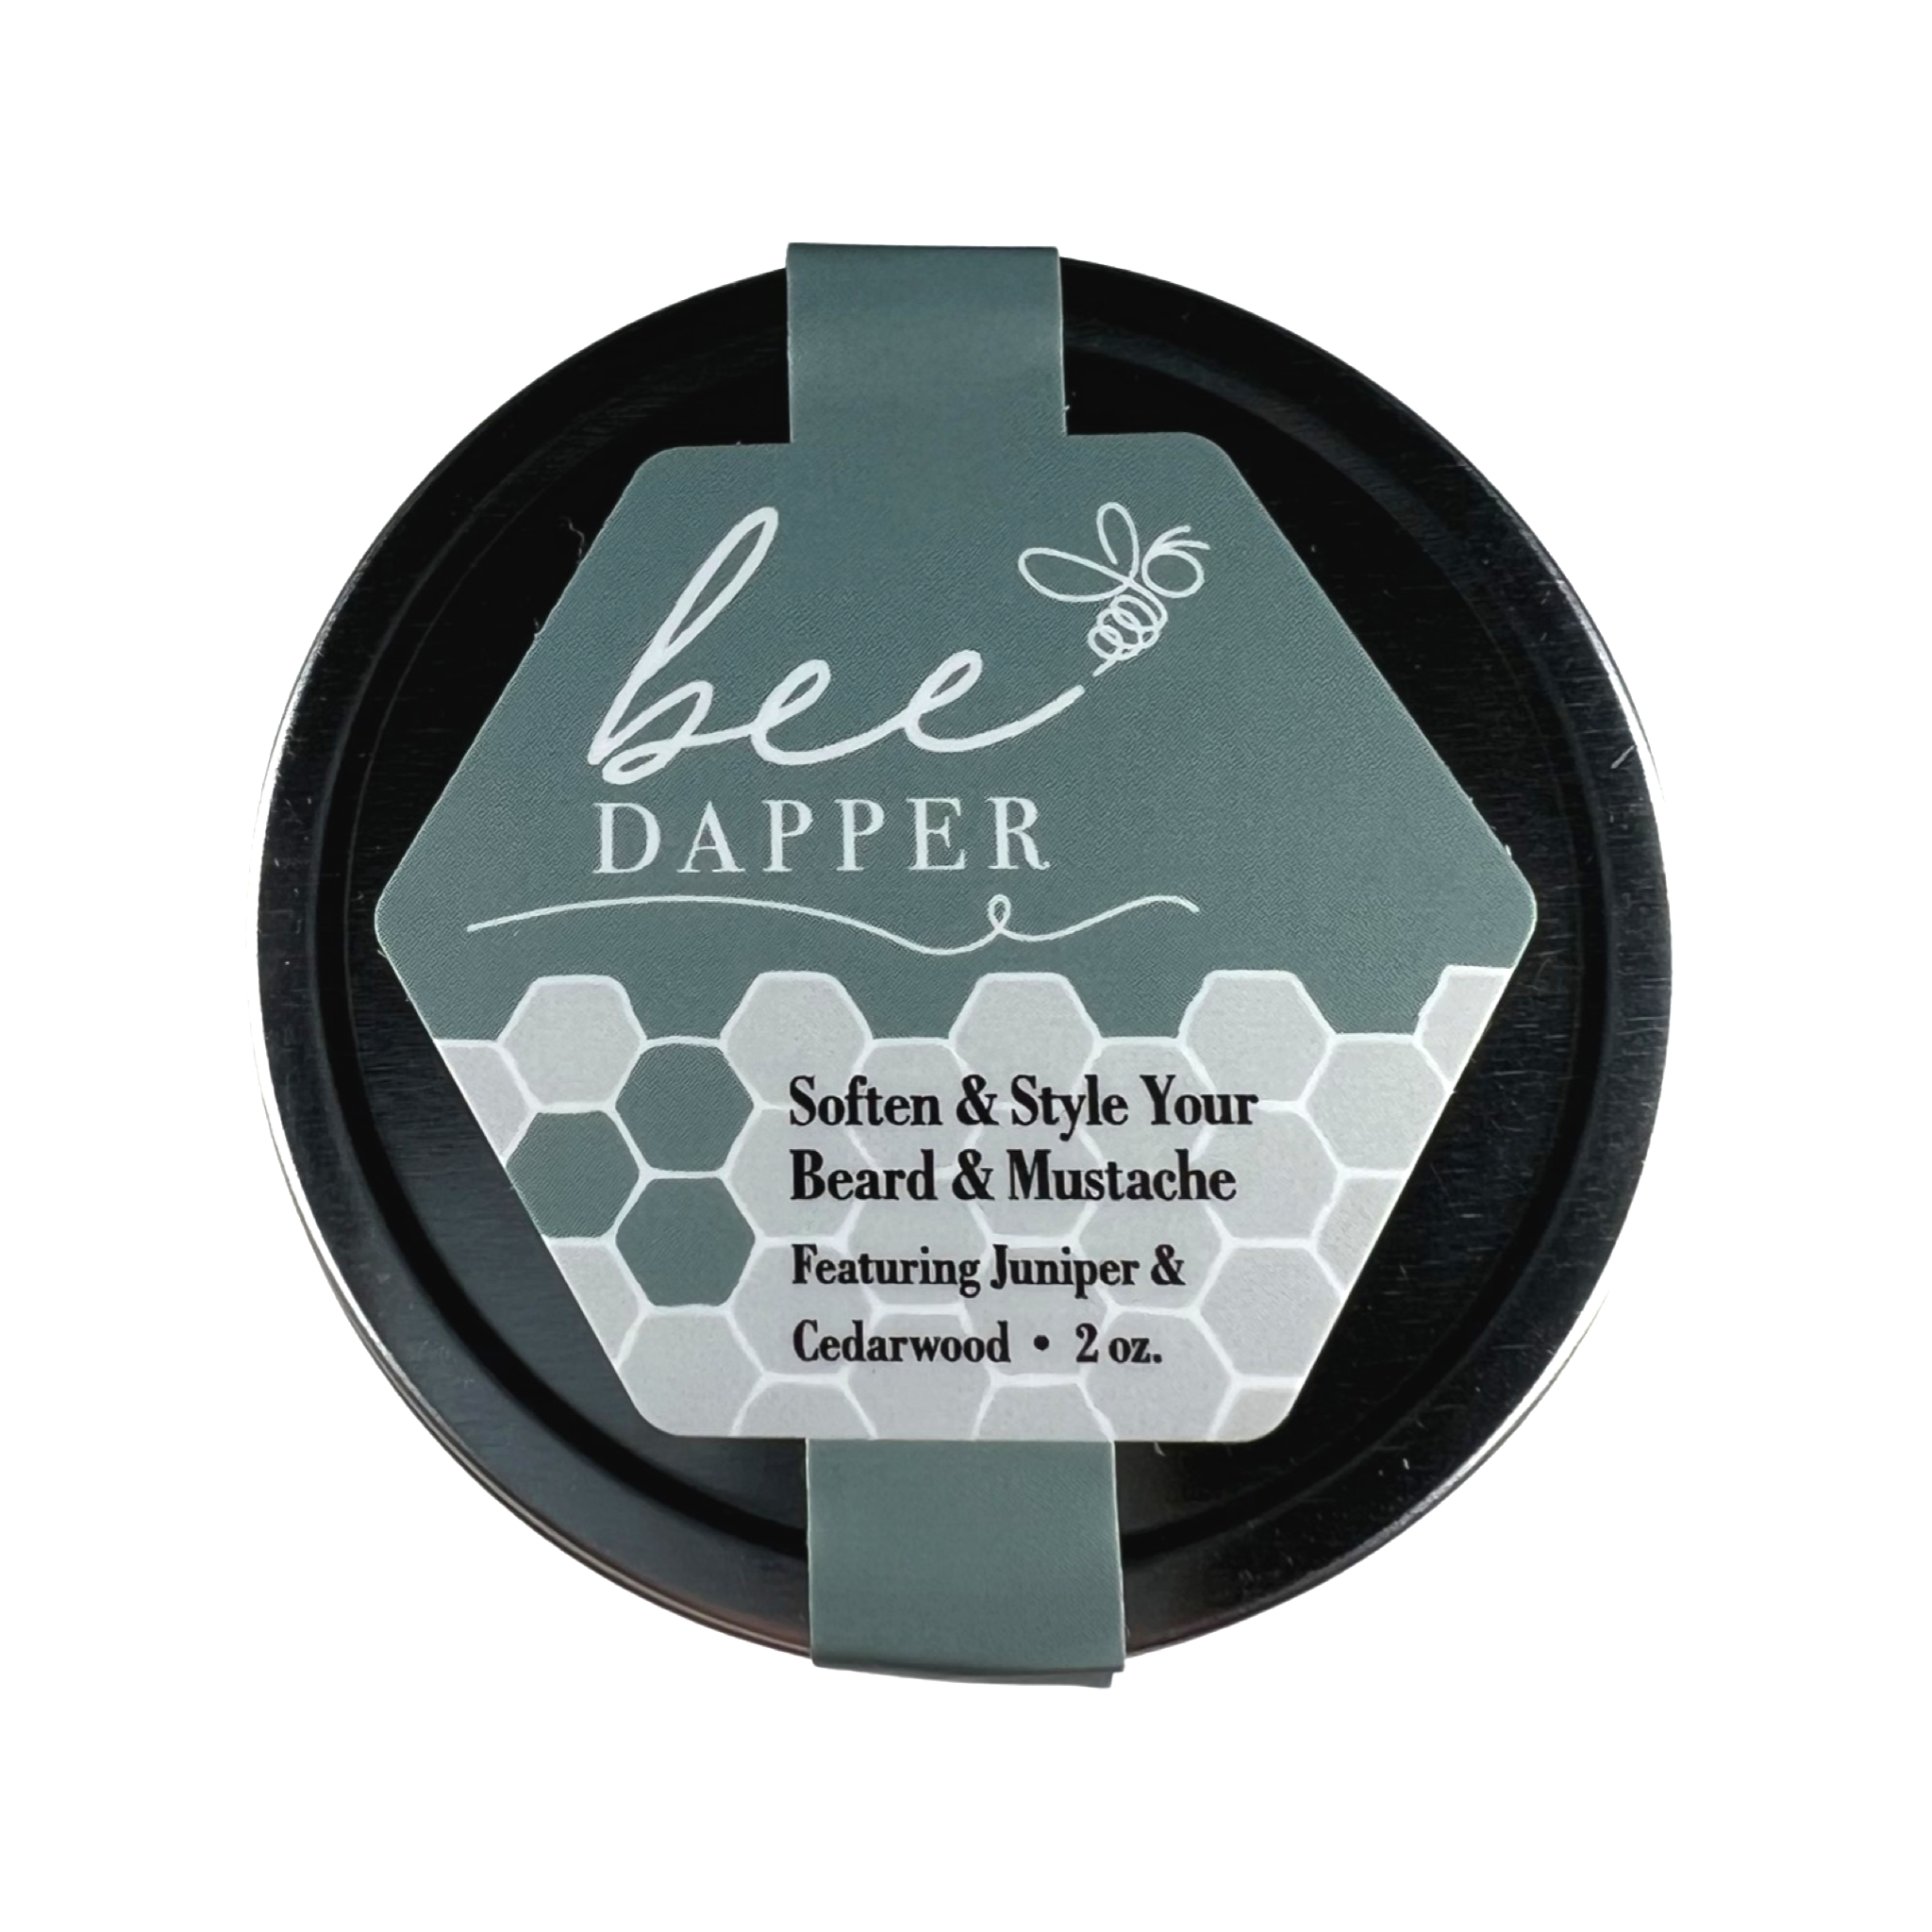 Bee Dapper - Soften & Style Your Beard & Mustache